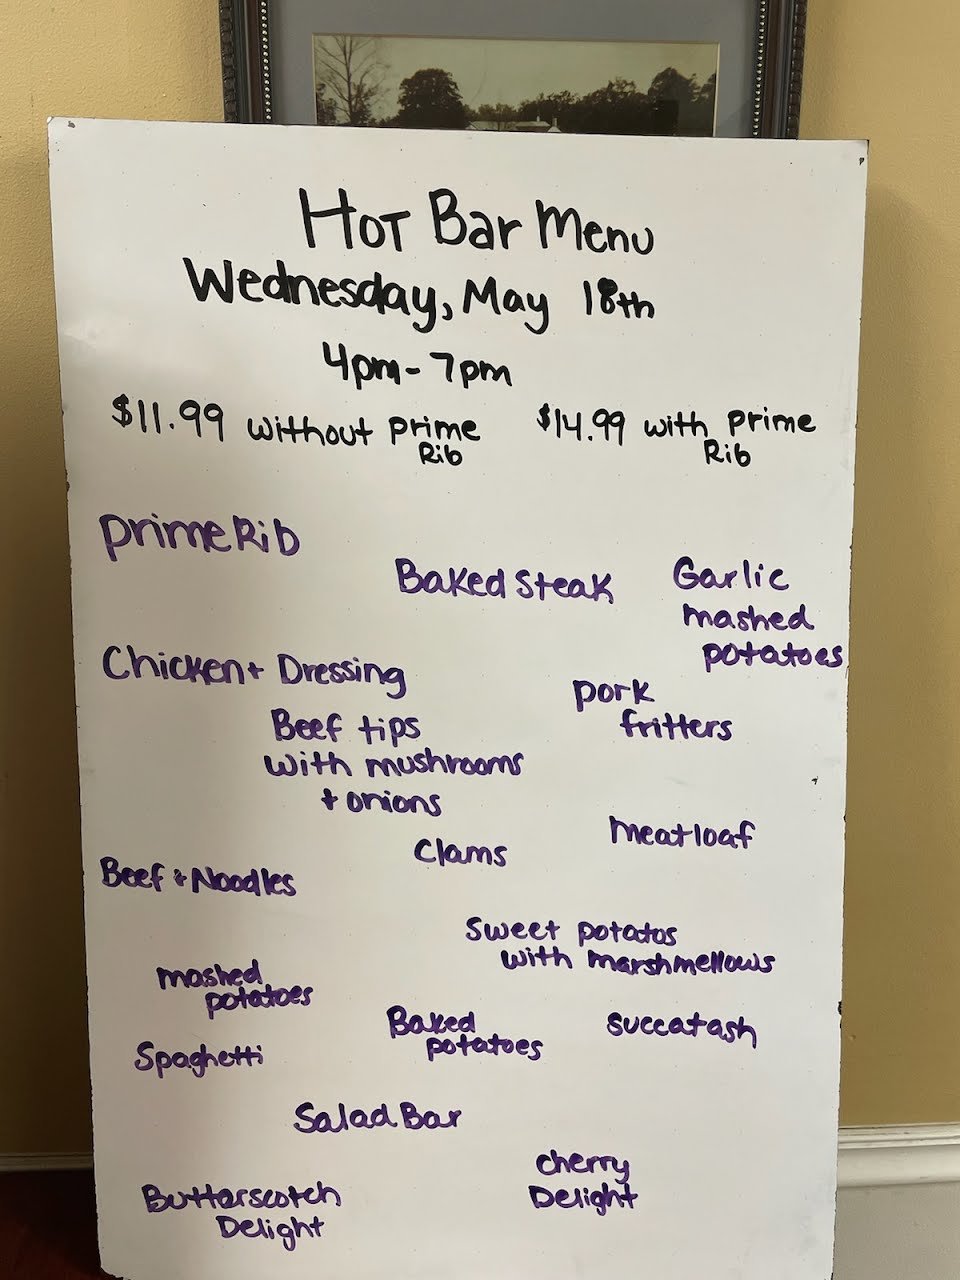 Hot Bar Buffet Menu